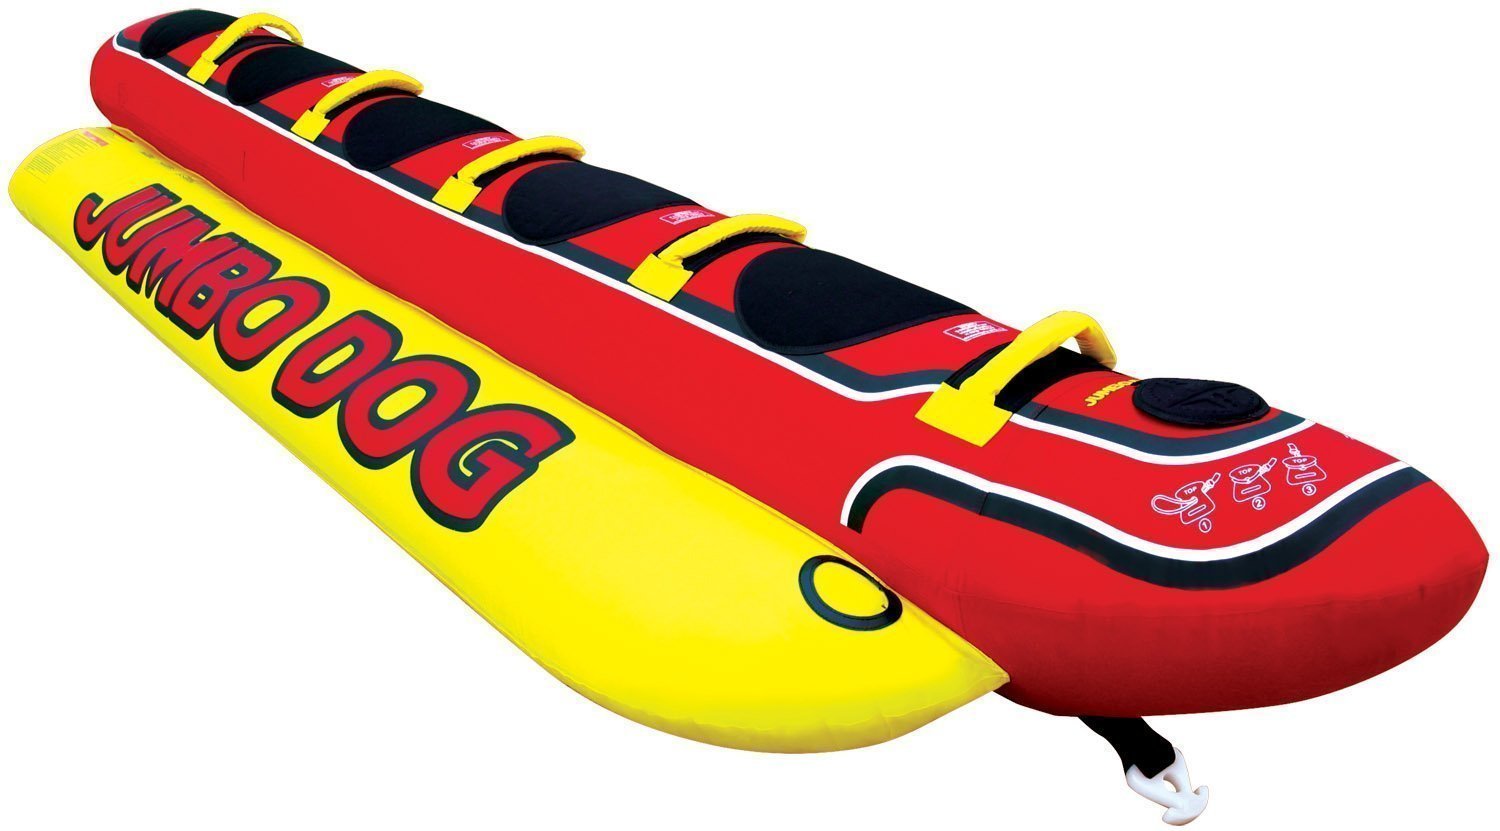 Opblaasbare ringen / bananen / boten Airhead Towable Hot Dog 3 Persons red/yellow